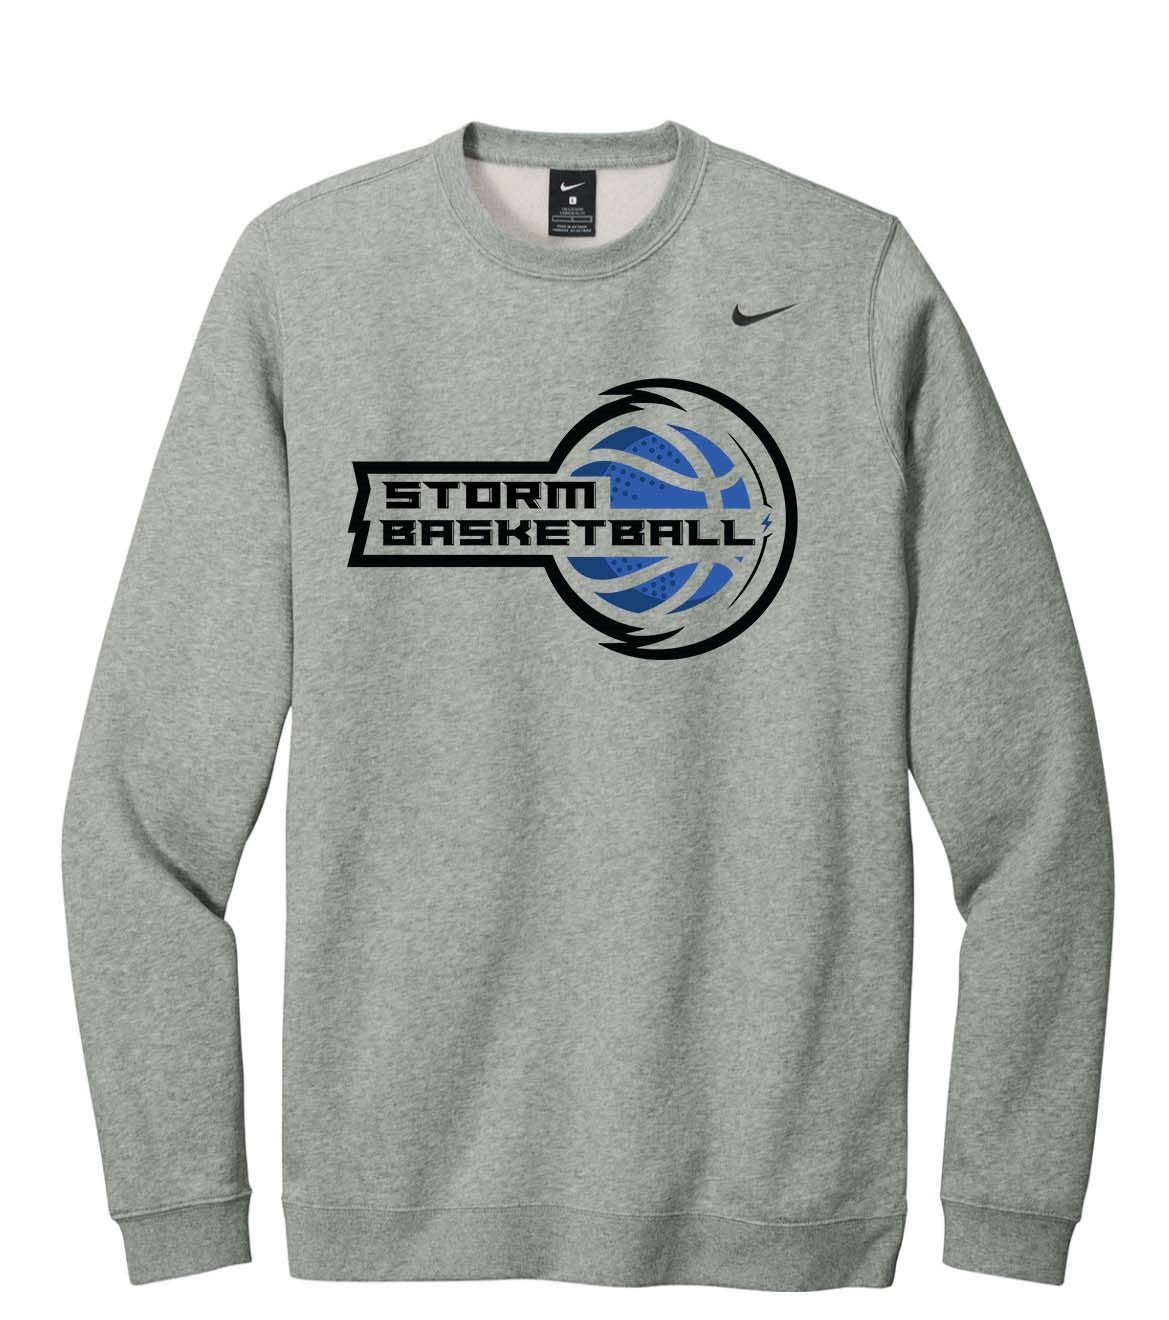 Storm Basketball Nike Crew Sweatshirt